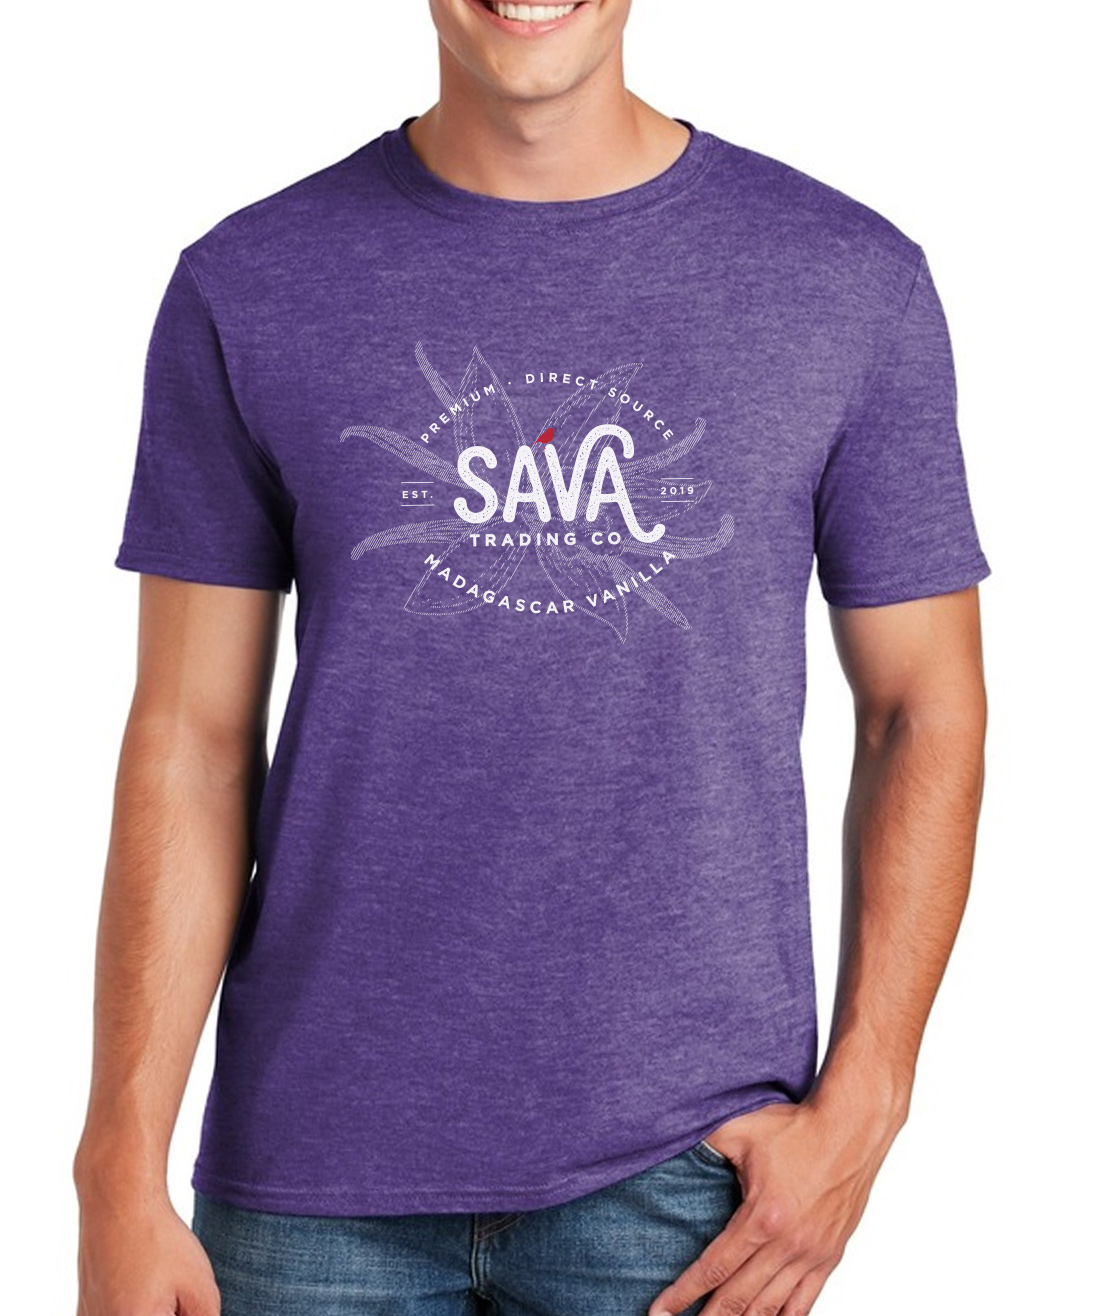 Shop - SAVA Trading Company